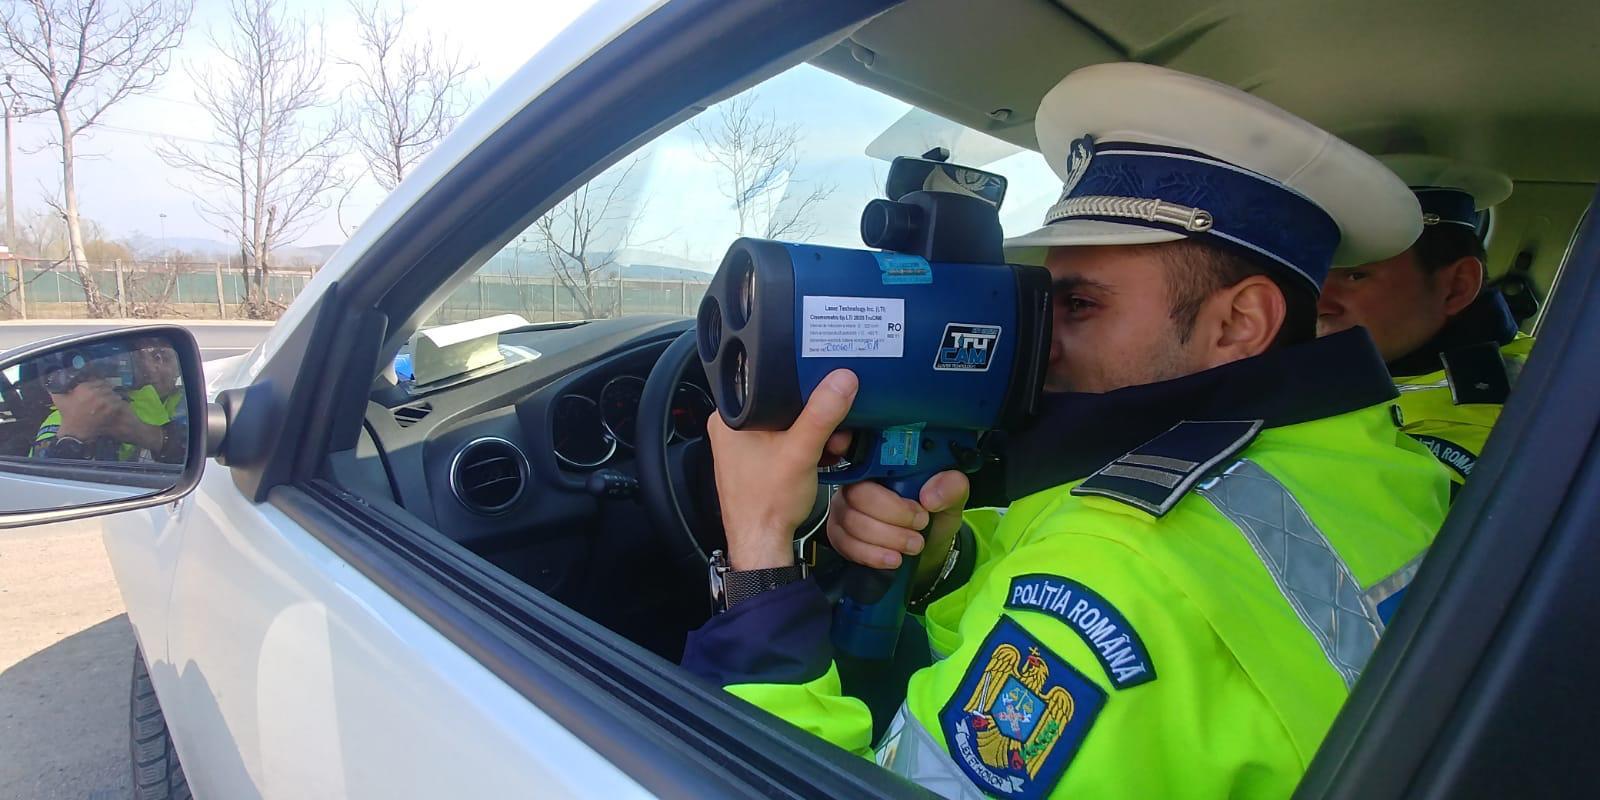 Poliţia Română: Un şofer circula cu 246 km/h, pe Autostrada A3/ Bărbatul a fost amendat cu 2.900 de lei şi i-a fost suspendat permisul pentru 90 de zile